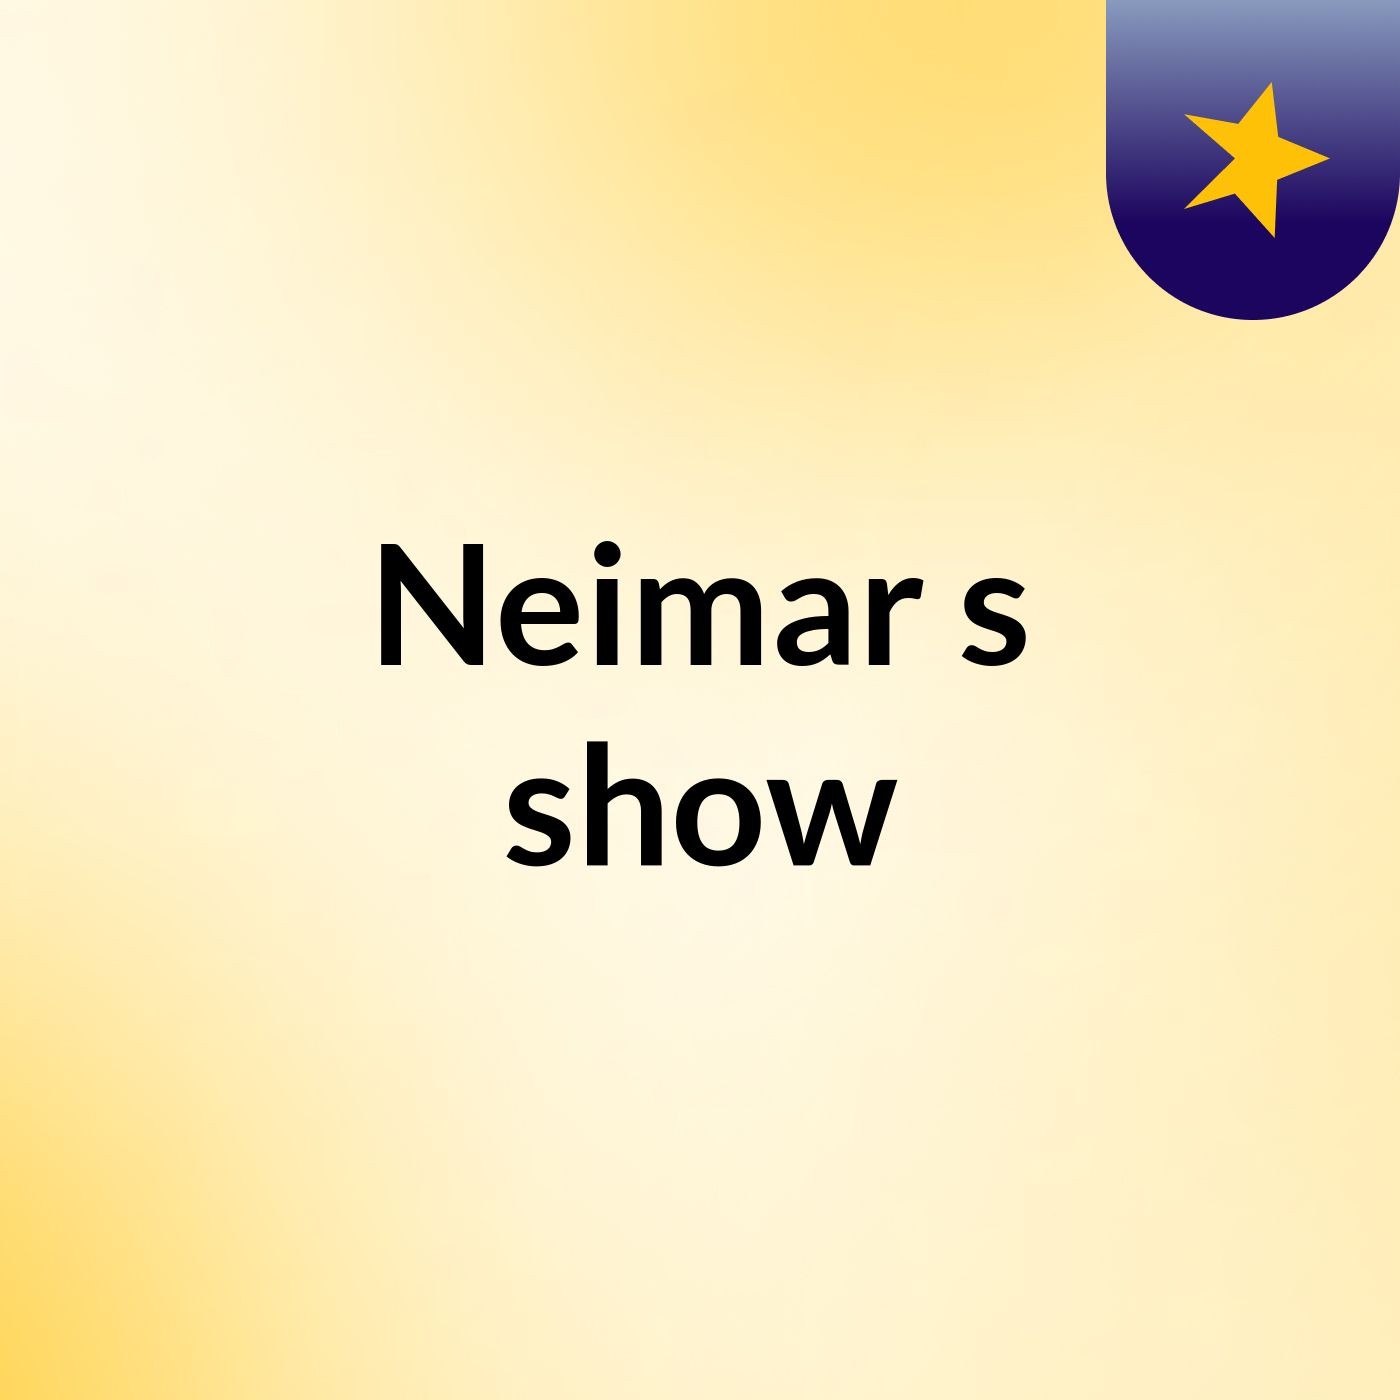 Neimar's show